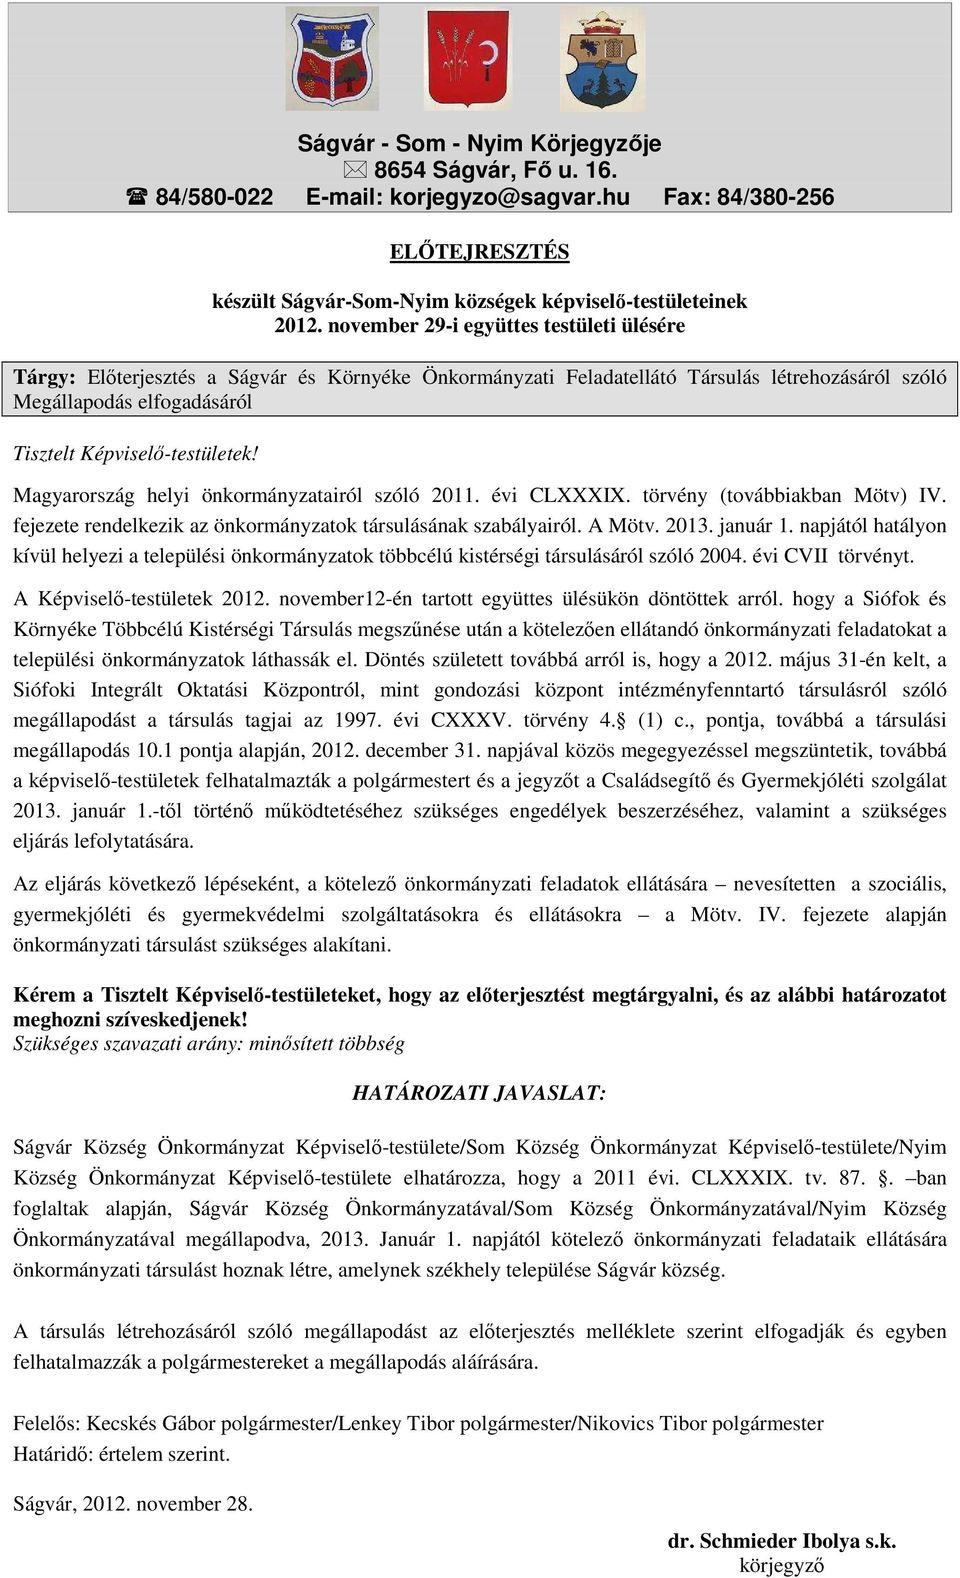 Magyarország helyi önkormányzatairól szóló 2011. évi CLXXXIX. törvény (továbbiakban Mötv) IV. fejezete rendelkezik az önkormányzatok társulásának szabályairól. A Mötv. 2013. január 1.